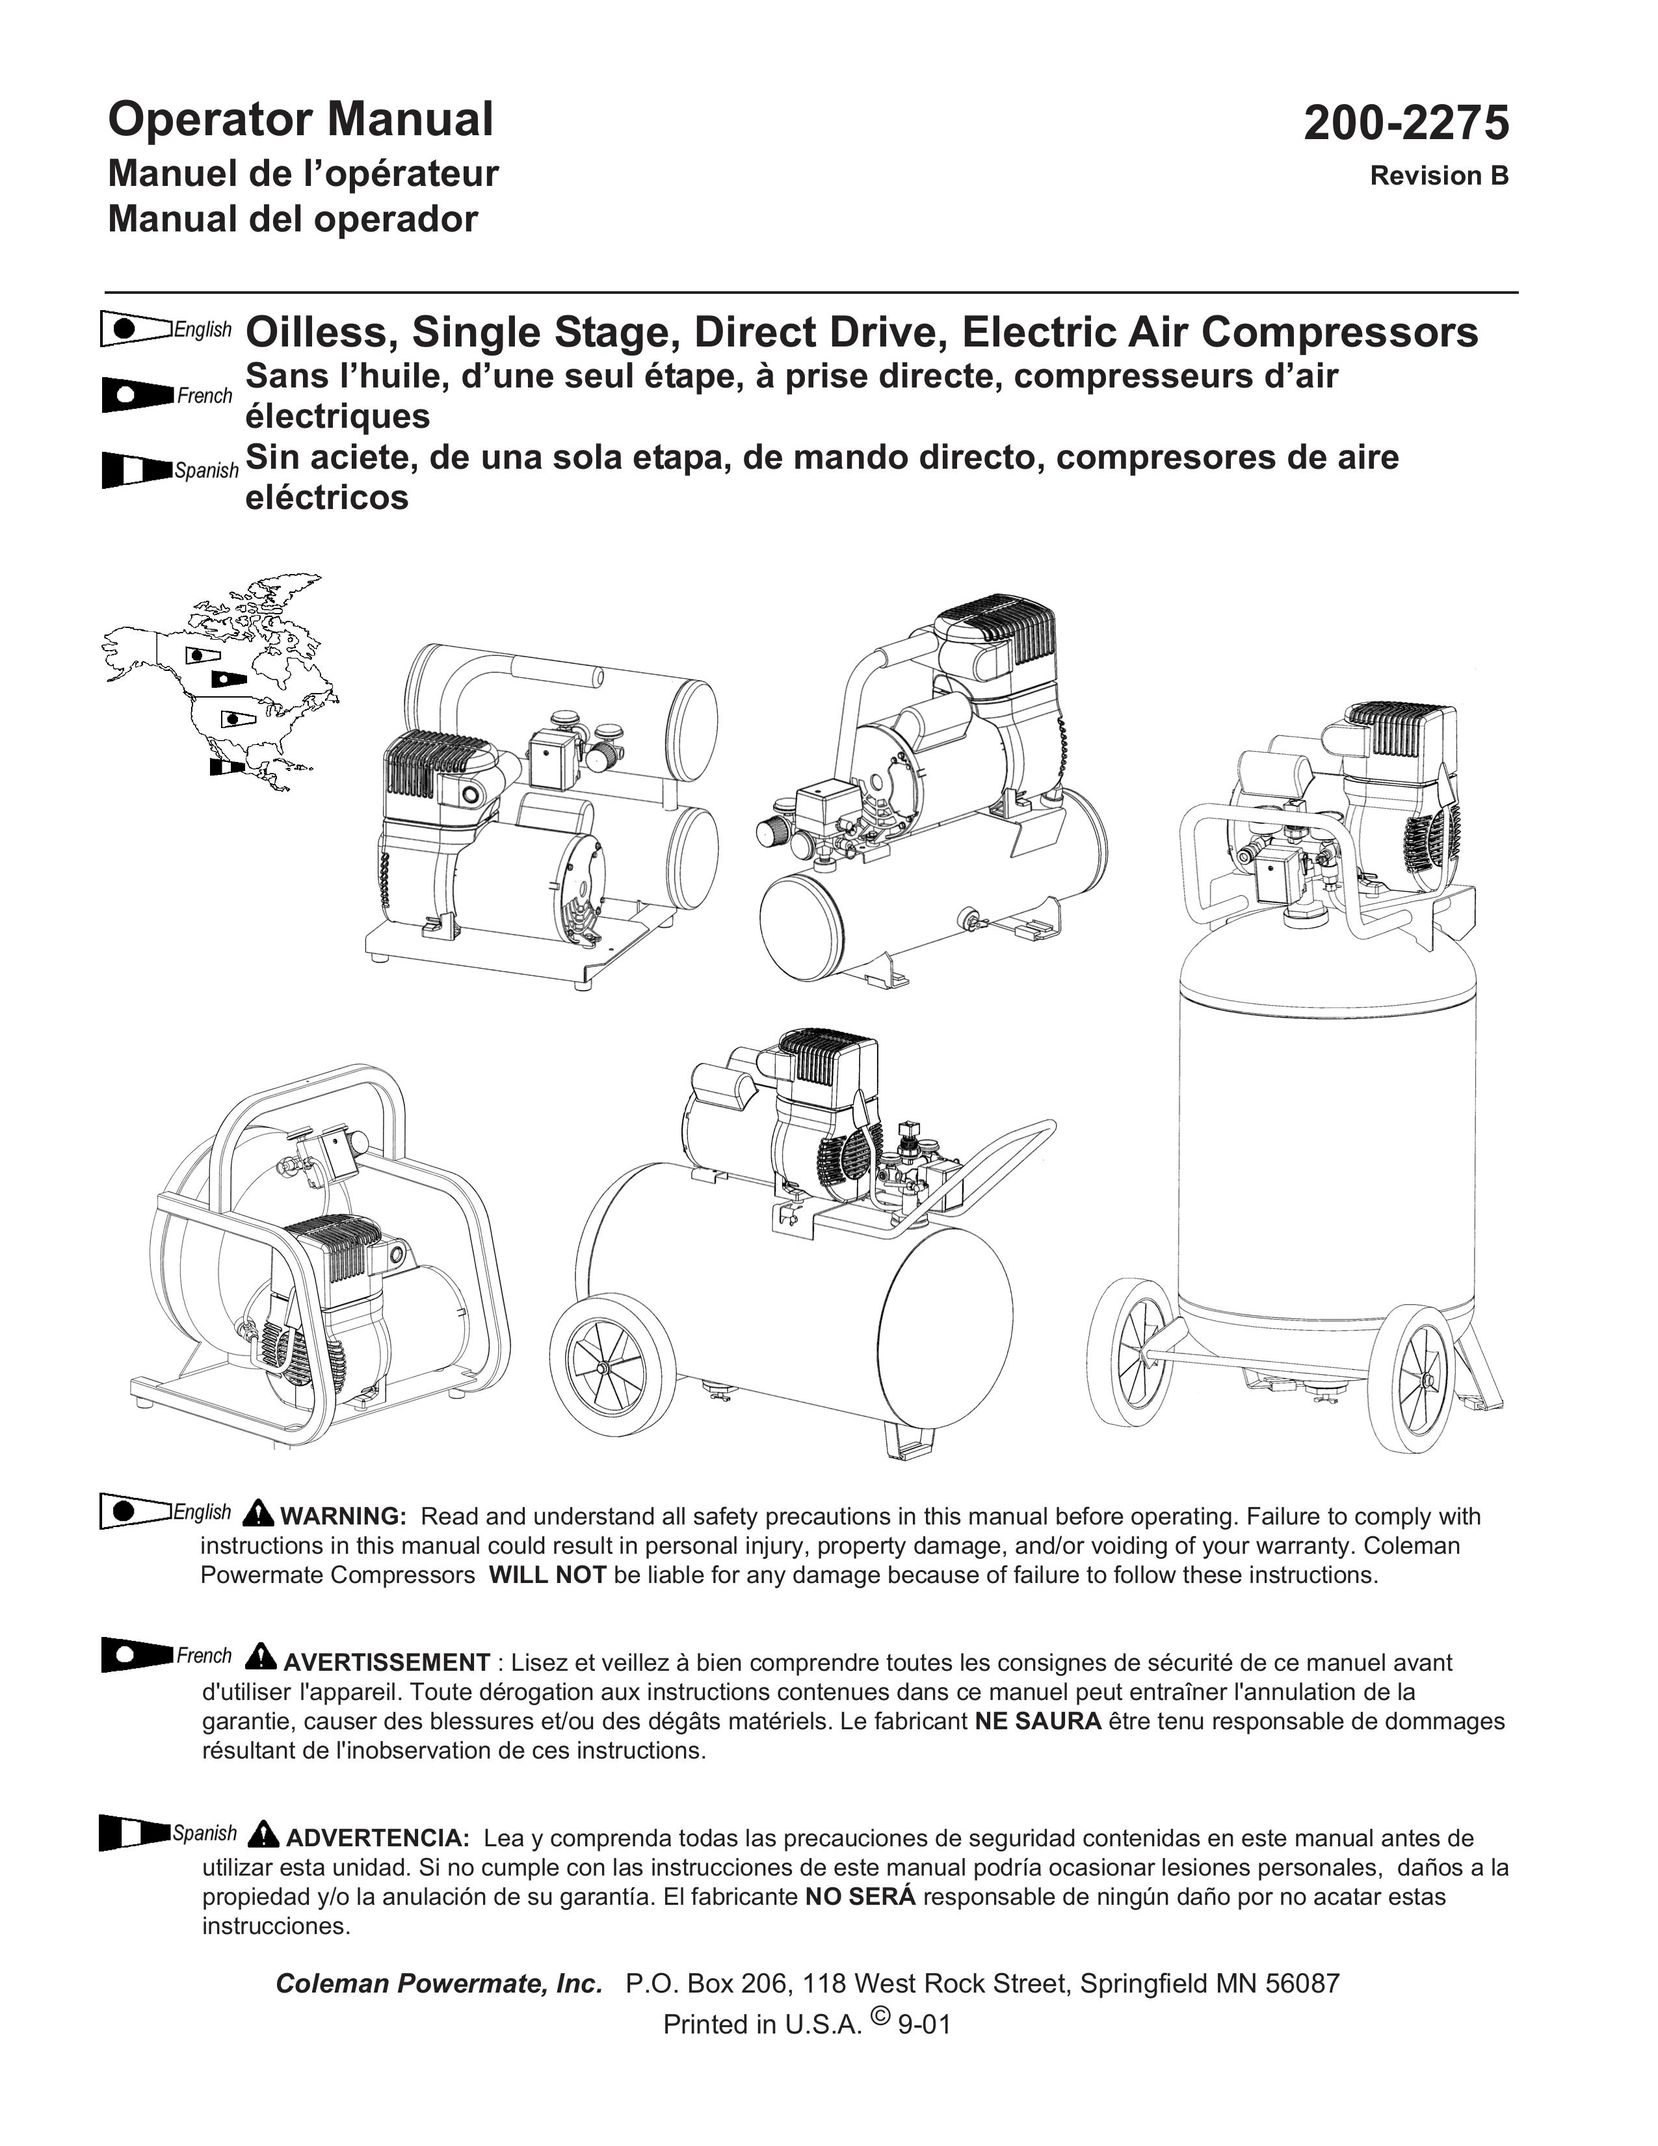 Coleman Air Compressors Air Compressor User Manual